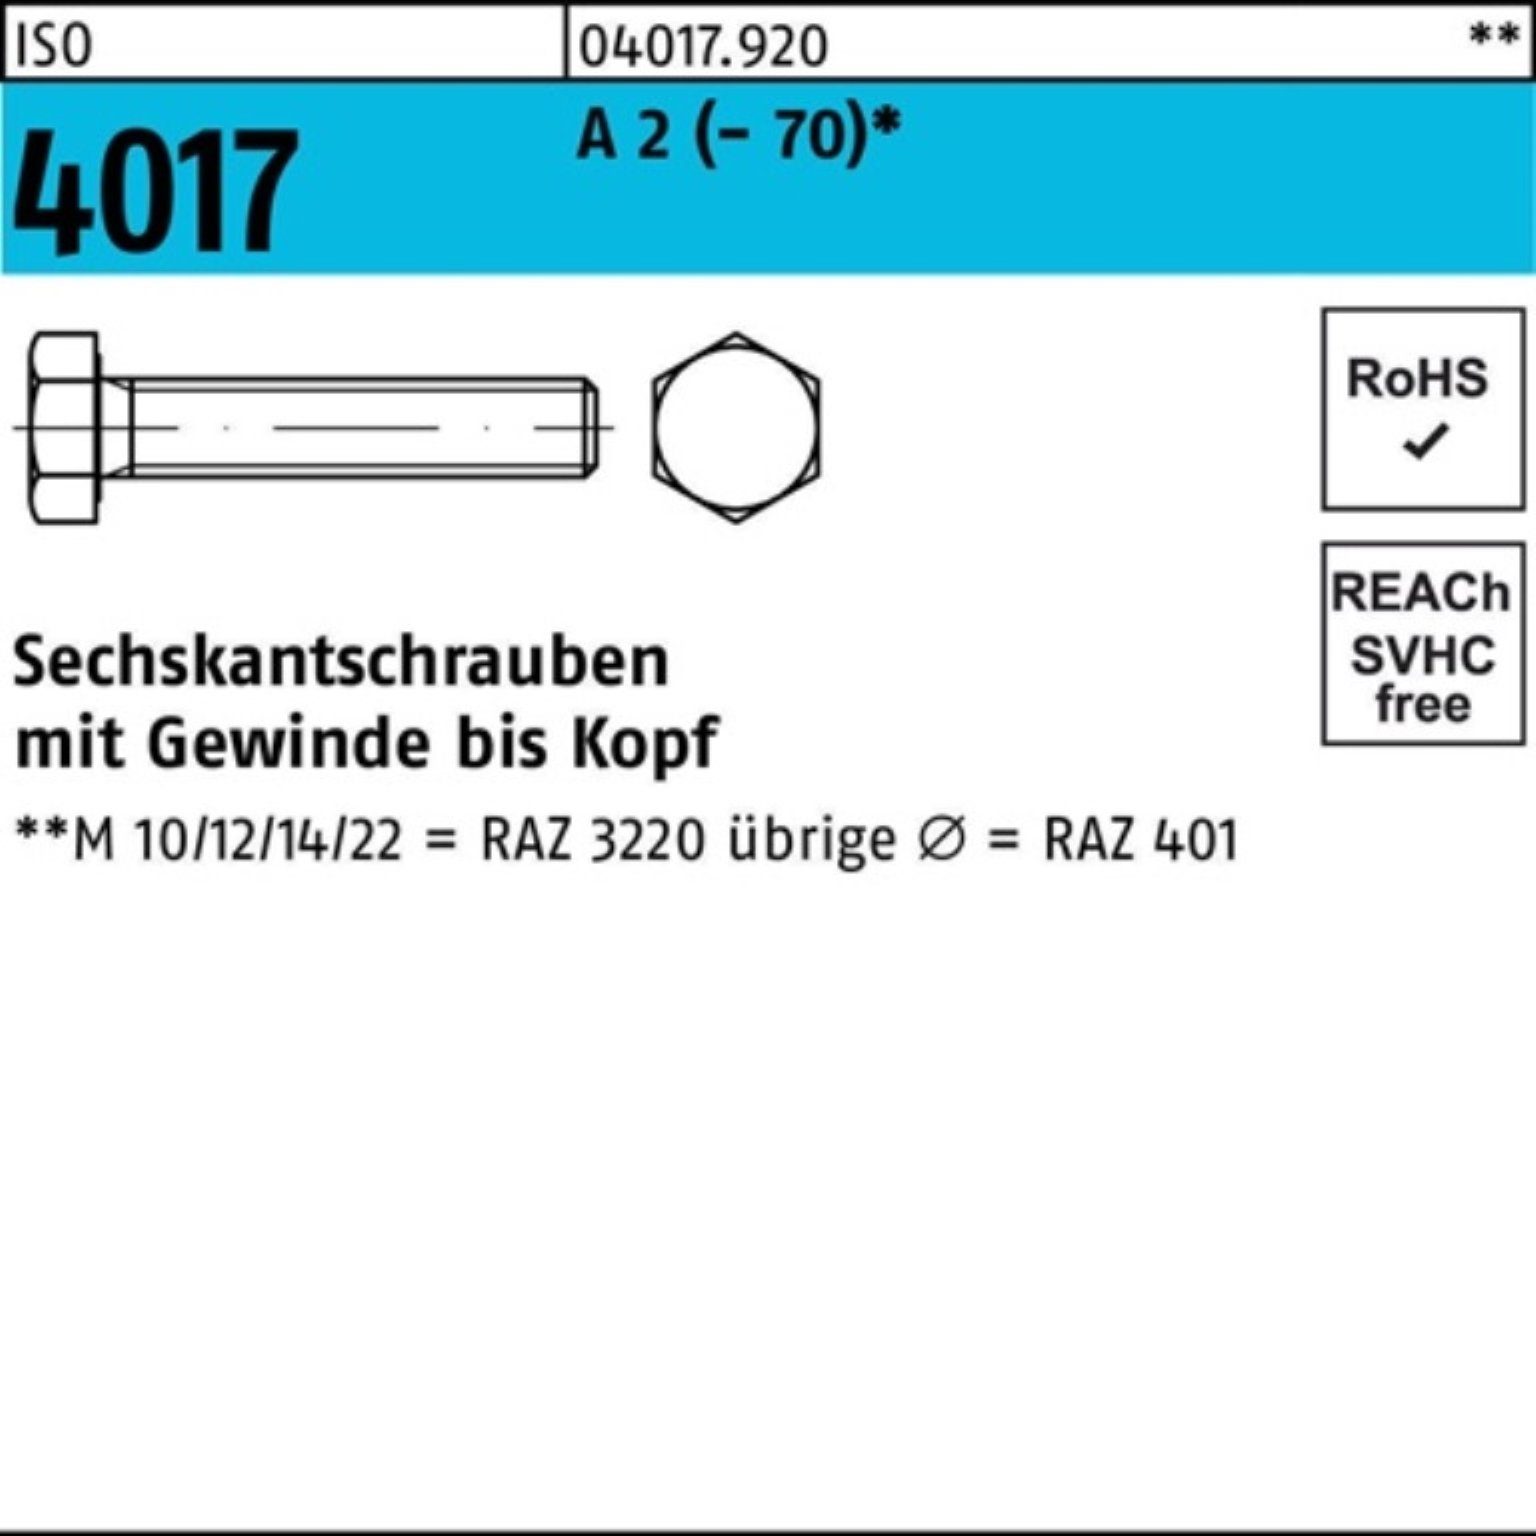 Bufab Sechskantschraube 500er Pack Sechskantschraube ISO 4017 VG M5x 10 A 2 (70) 500 Stück